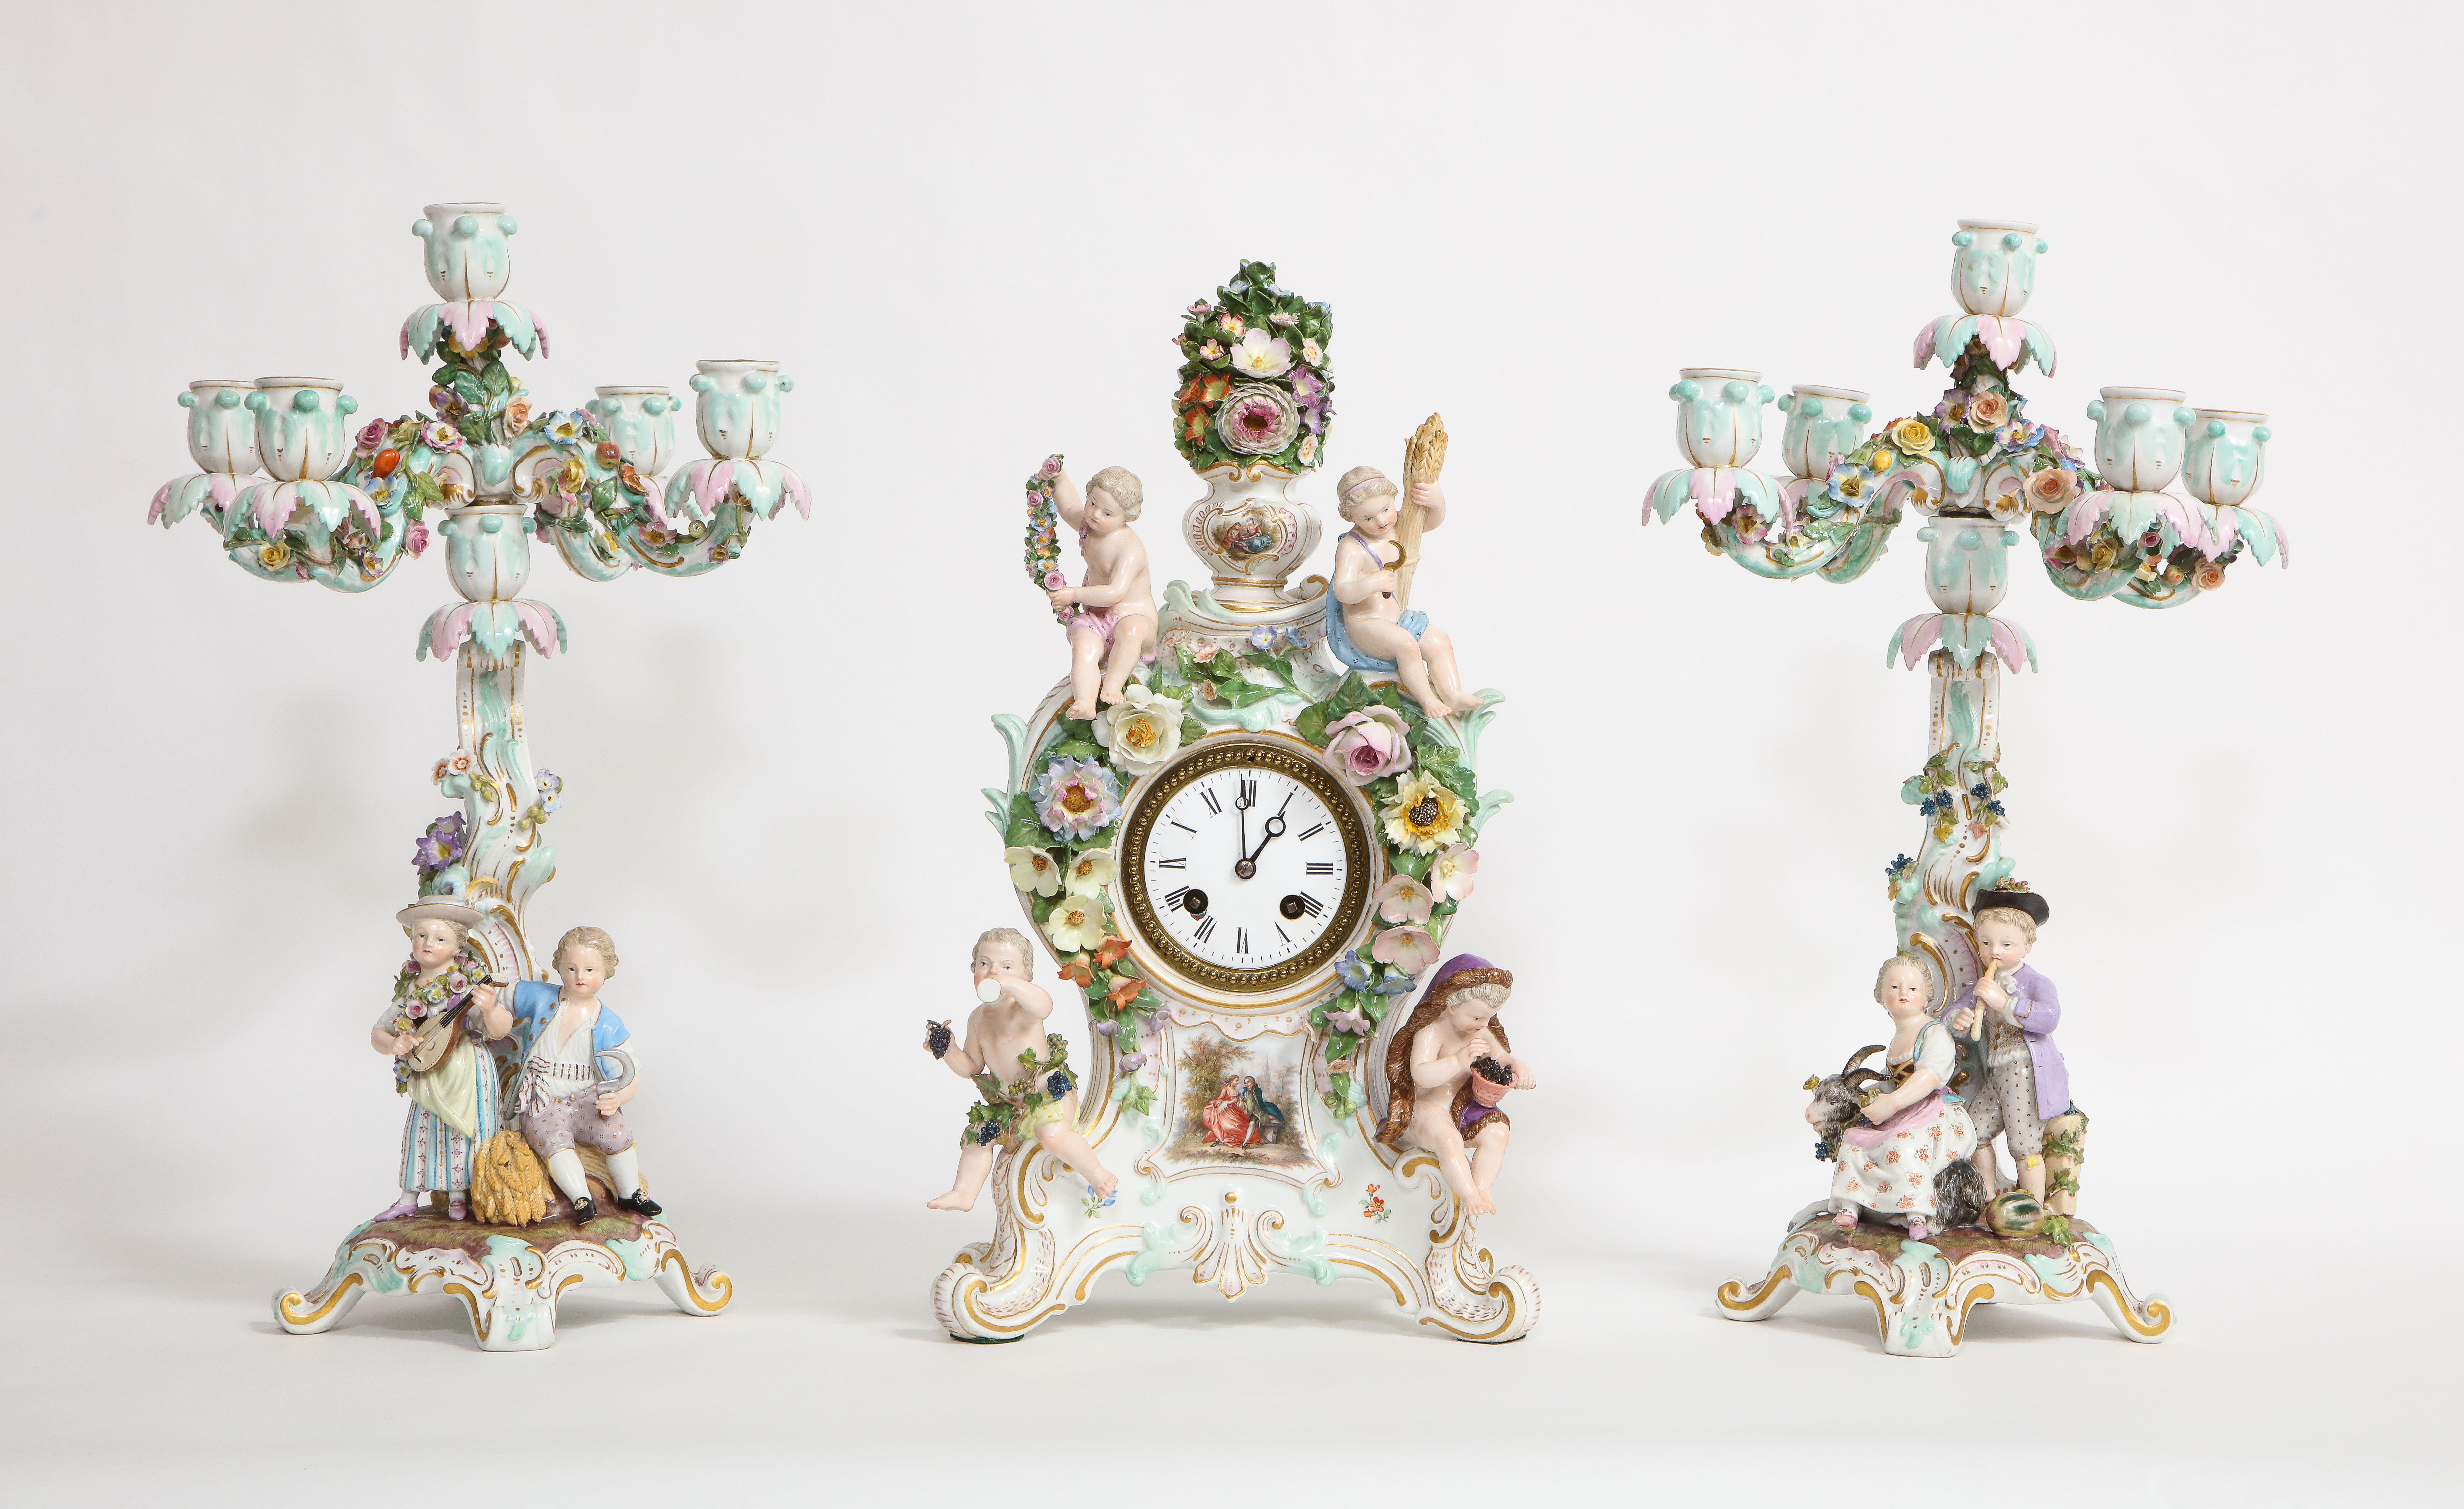 Eine beeindruckende und seltene Meissener Porzellan Vier-Jahreszeiten-Uhr und Kandelaber Garnitur des 19. Jahrhunderts. Bestehend aus drei Einzelteilen, darunter eine wunderschöne Uhr und zwei passende Kandelaber. Die Uhr besticht durch die